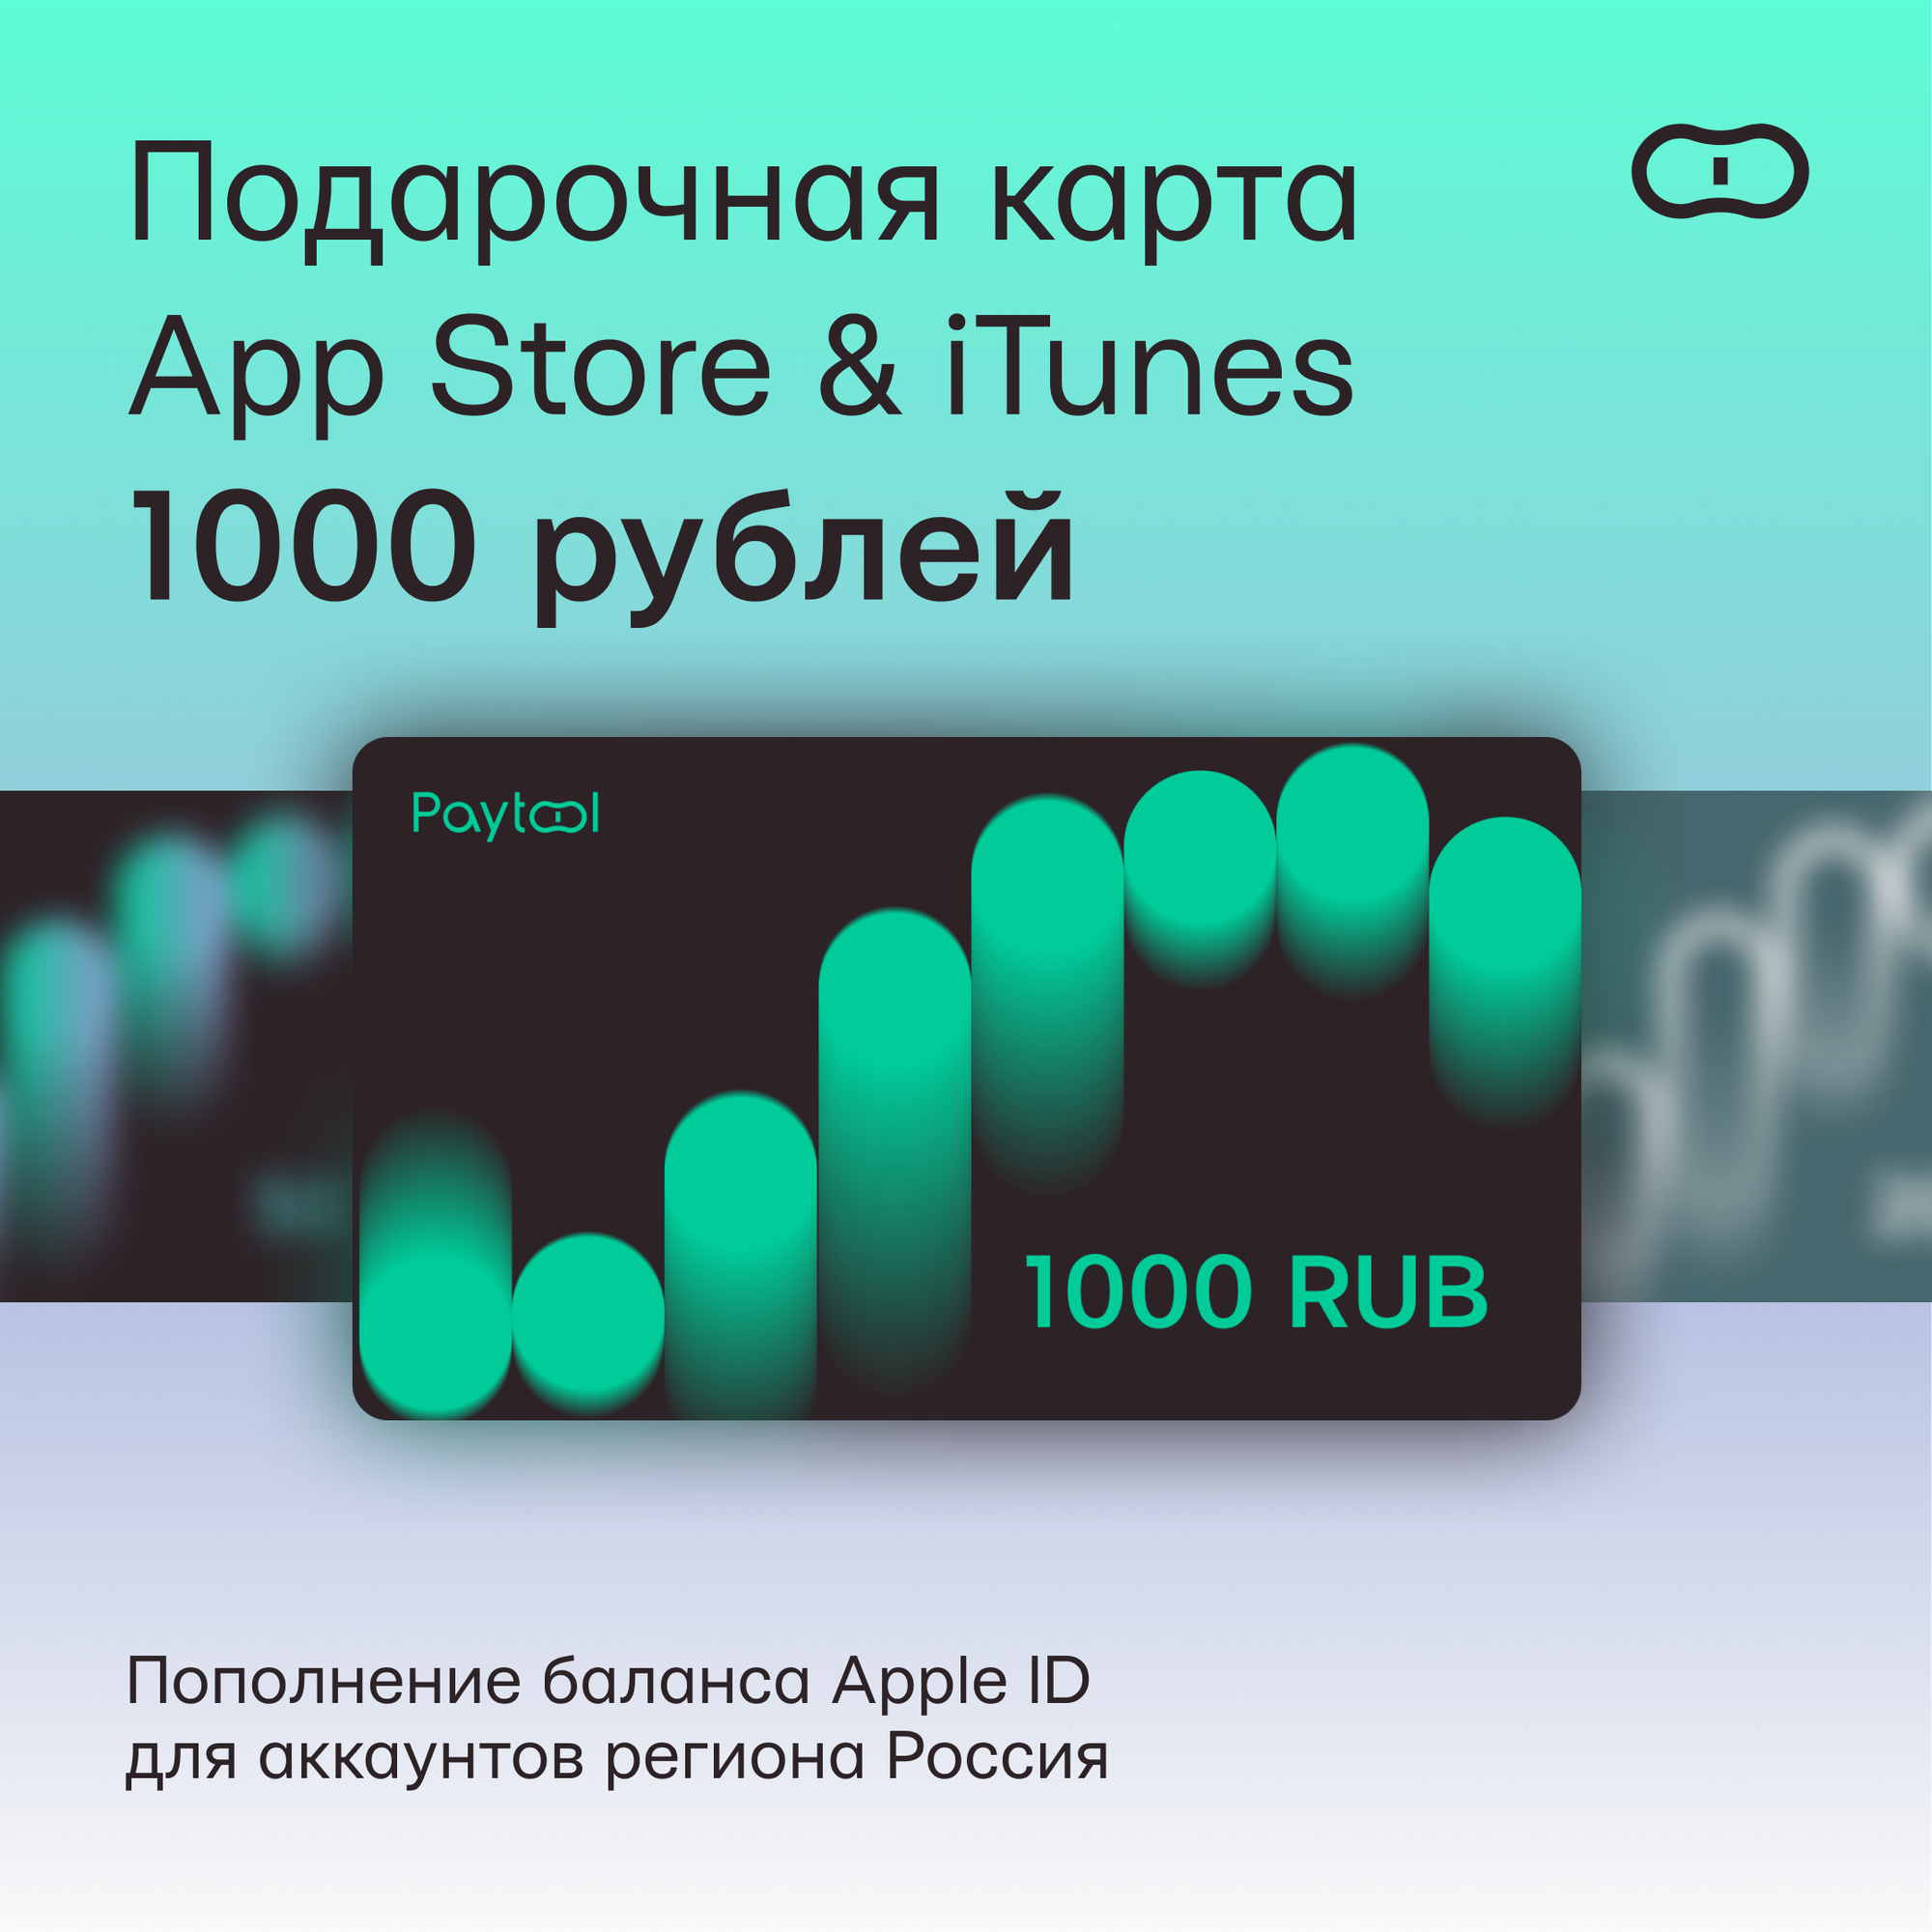 Подарочная карта/карта оплаты Apple (пополнение счёта на 1000 рублей App Store & iTunes) бессрочная активация